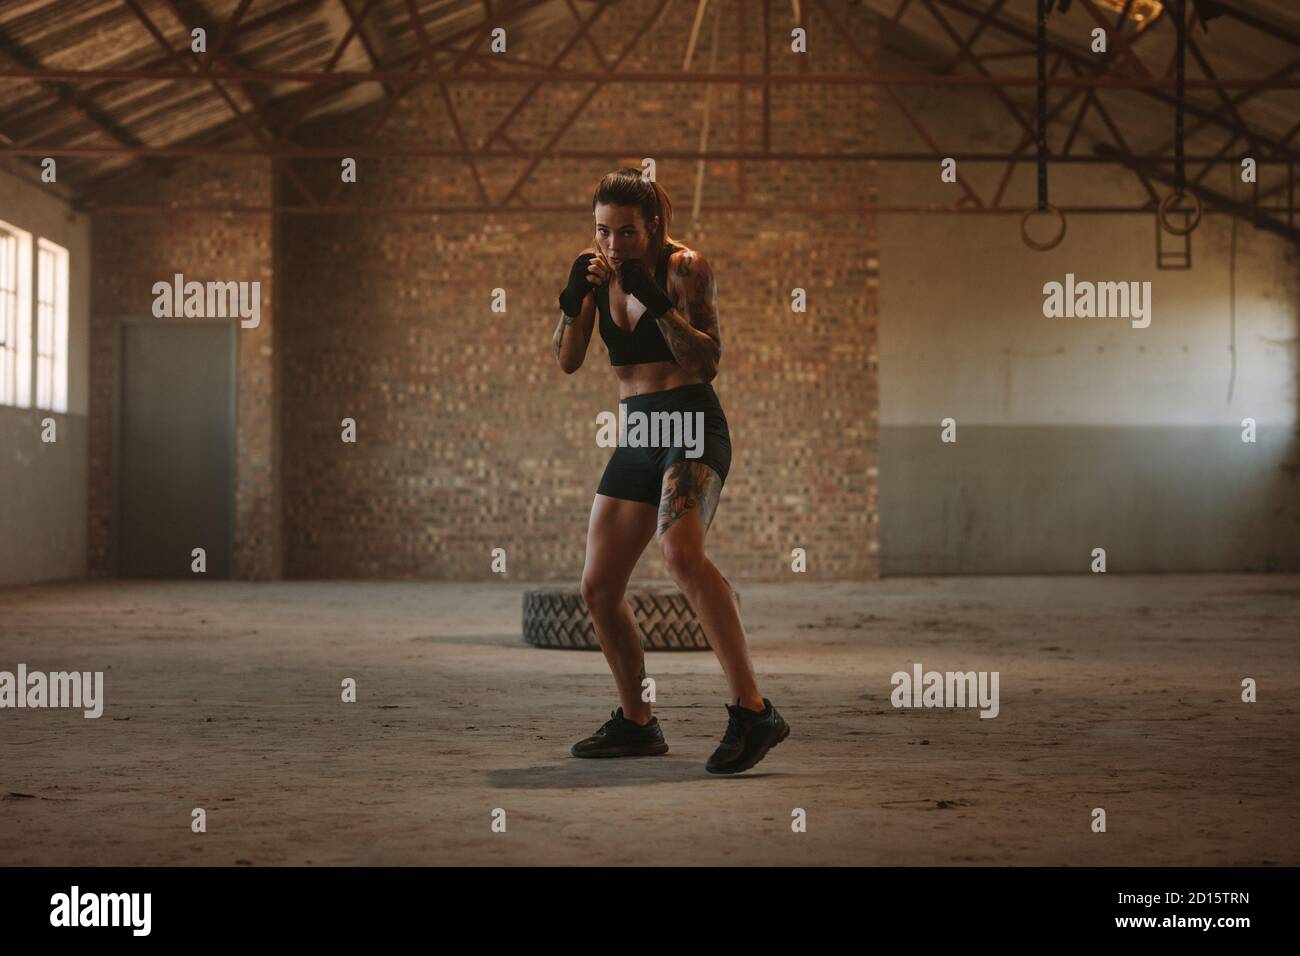 Frau tut Schattenboxen Übung in leeren Fabrik Schatten. Frau in Sportkleidung übt ihre Schläge in einem verlassenen Lager. Stockfoto